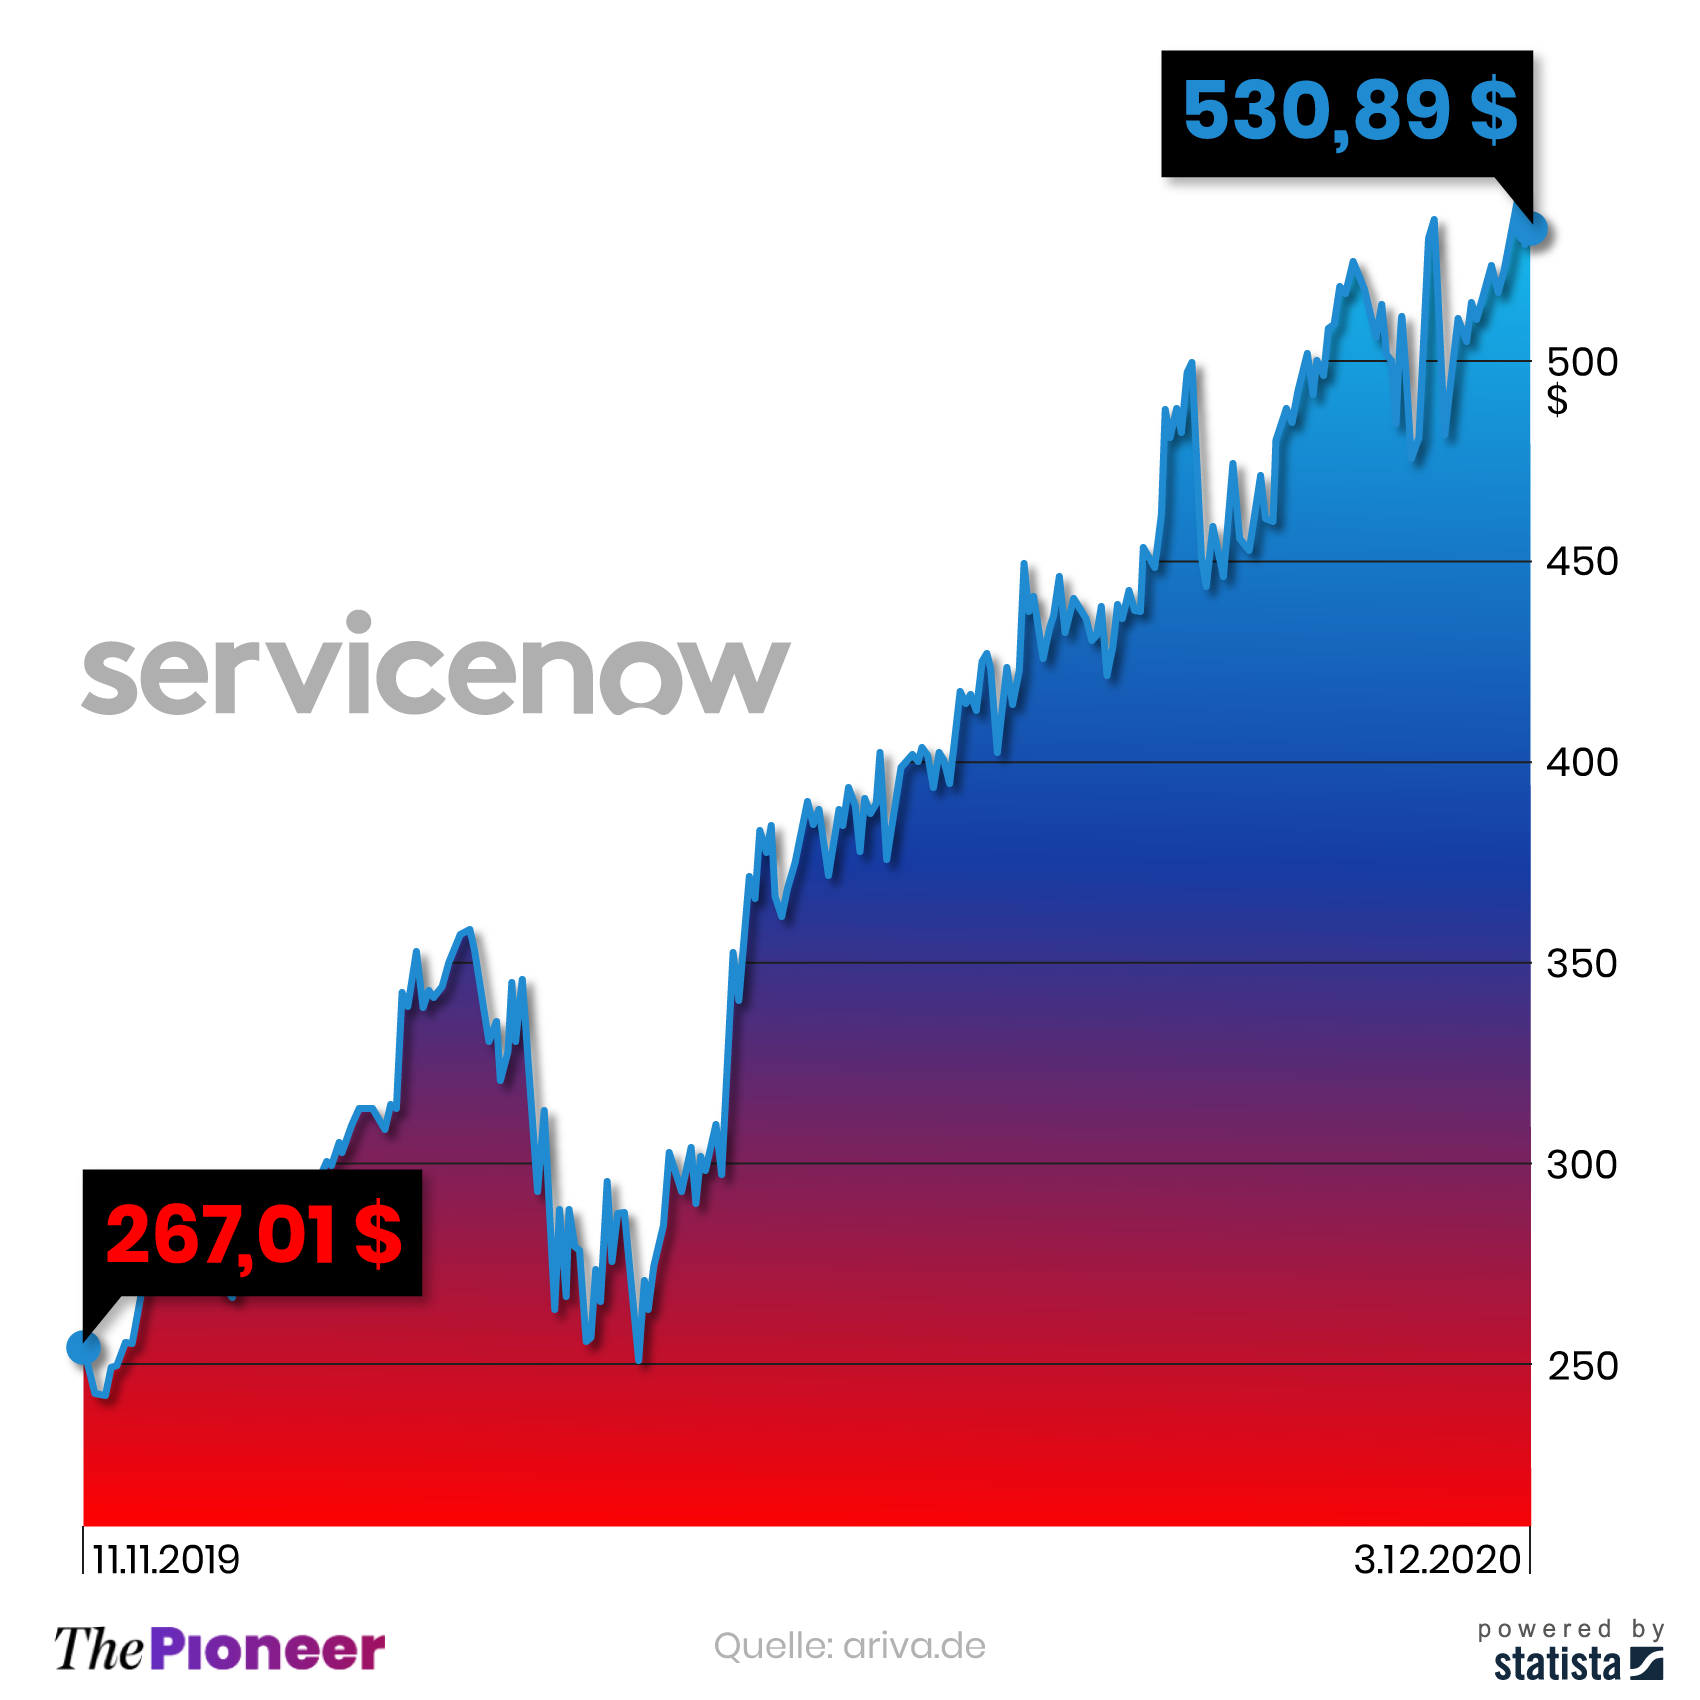 Kursentwicklung der Service-Now Aktie seit dem Antritt von McDermott als Vorstandsvorsitzender, in US-Dollar